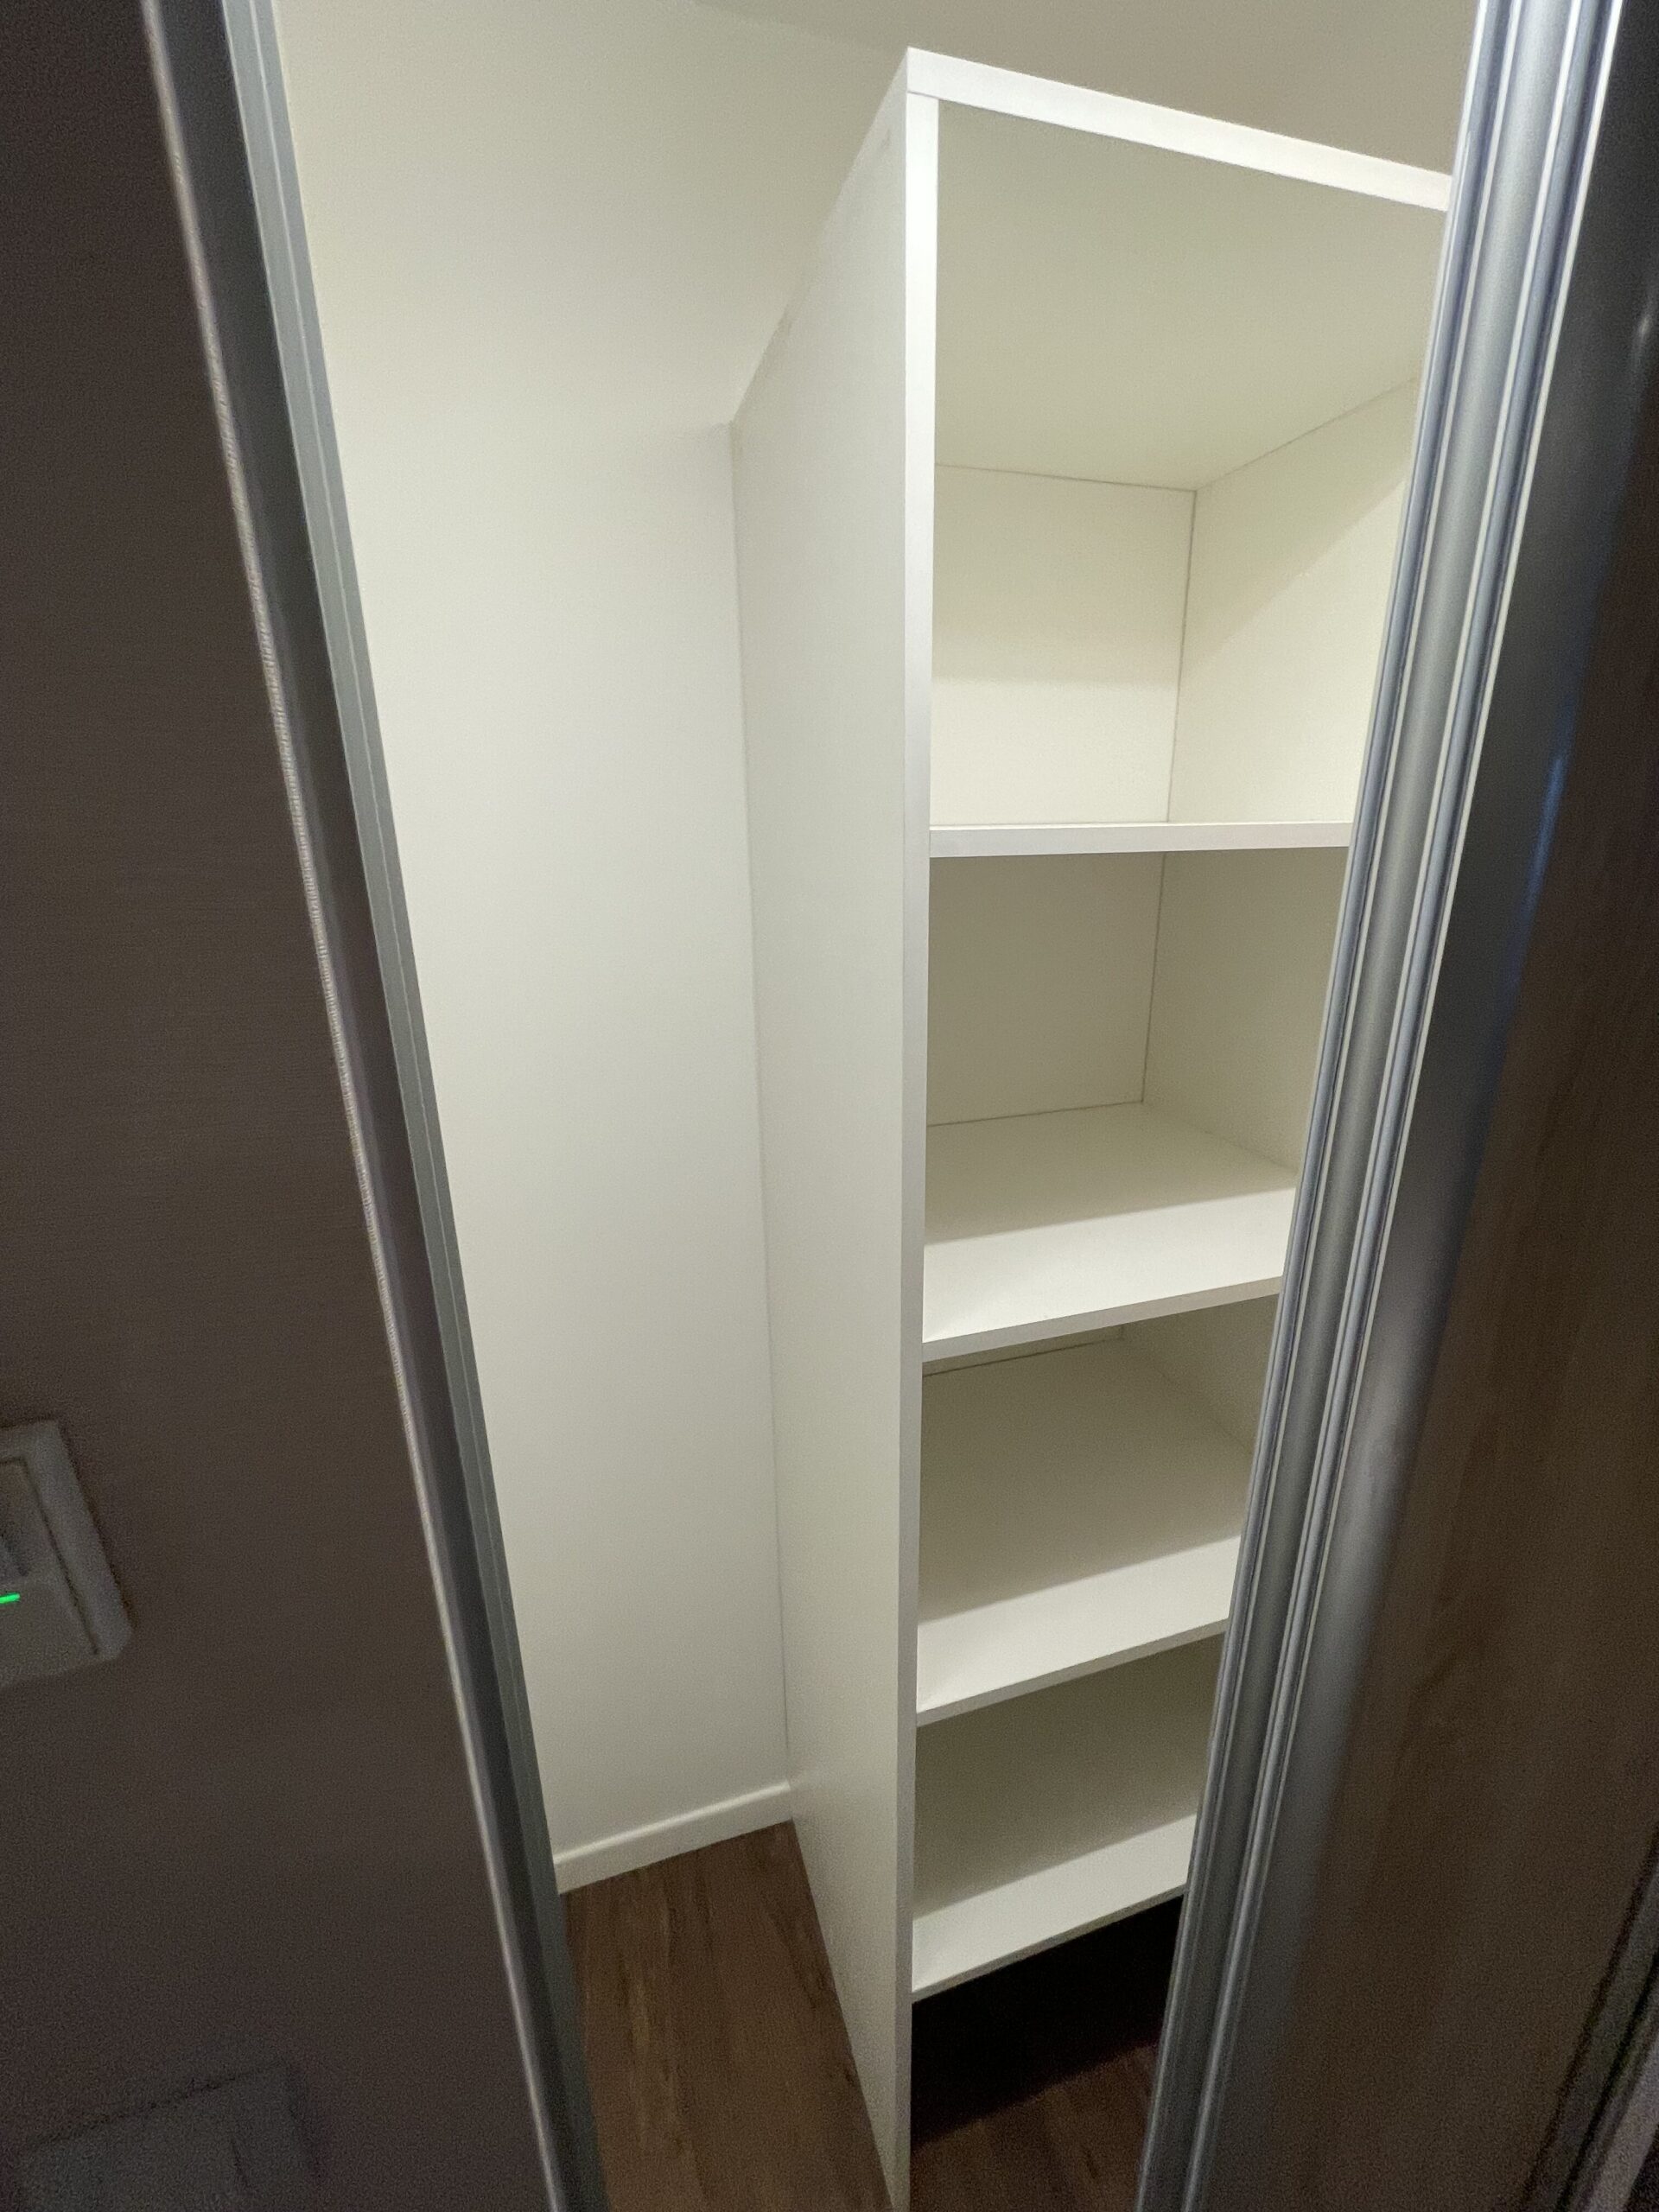 a closet with shelves inside